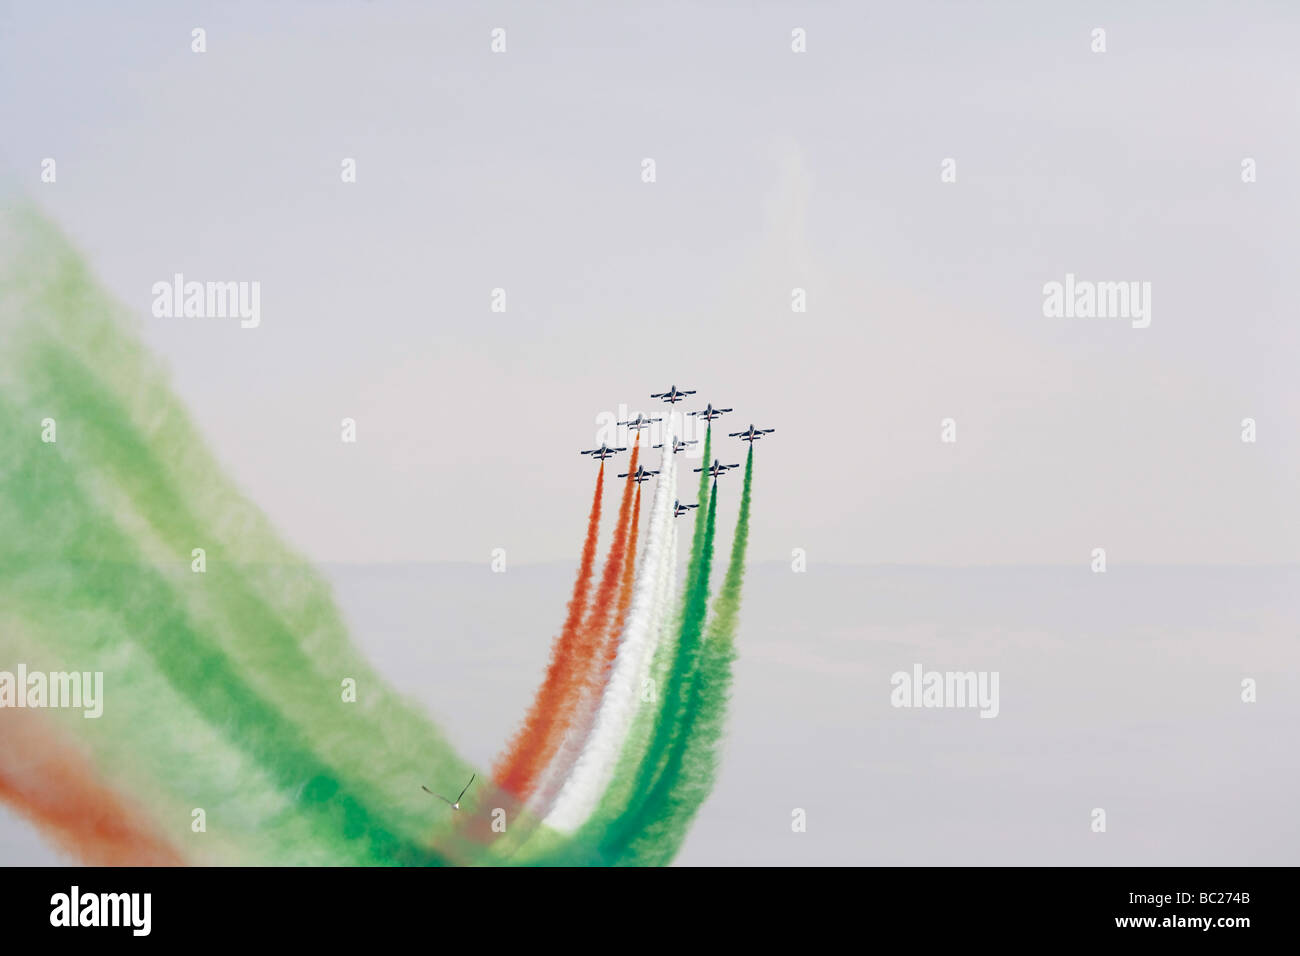 Frecce tricolori the acrobatic italian team planes Stock Photo